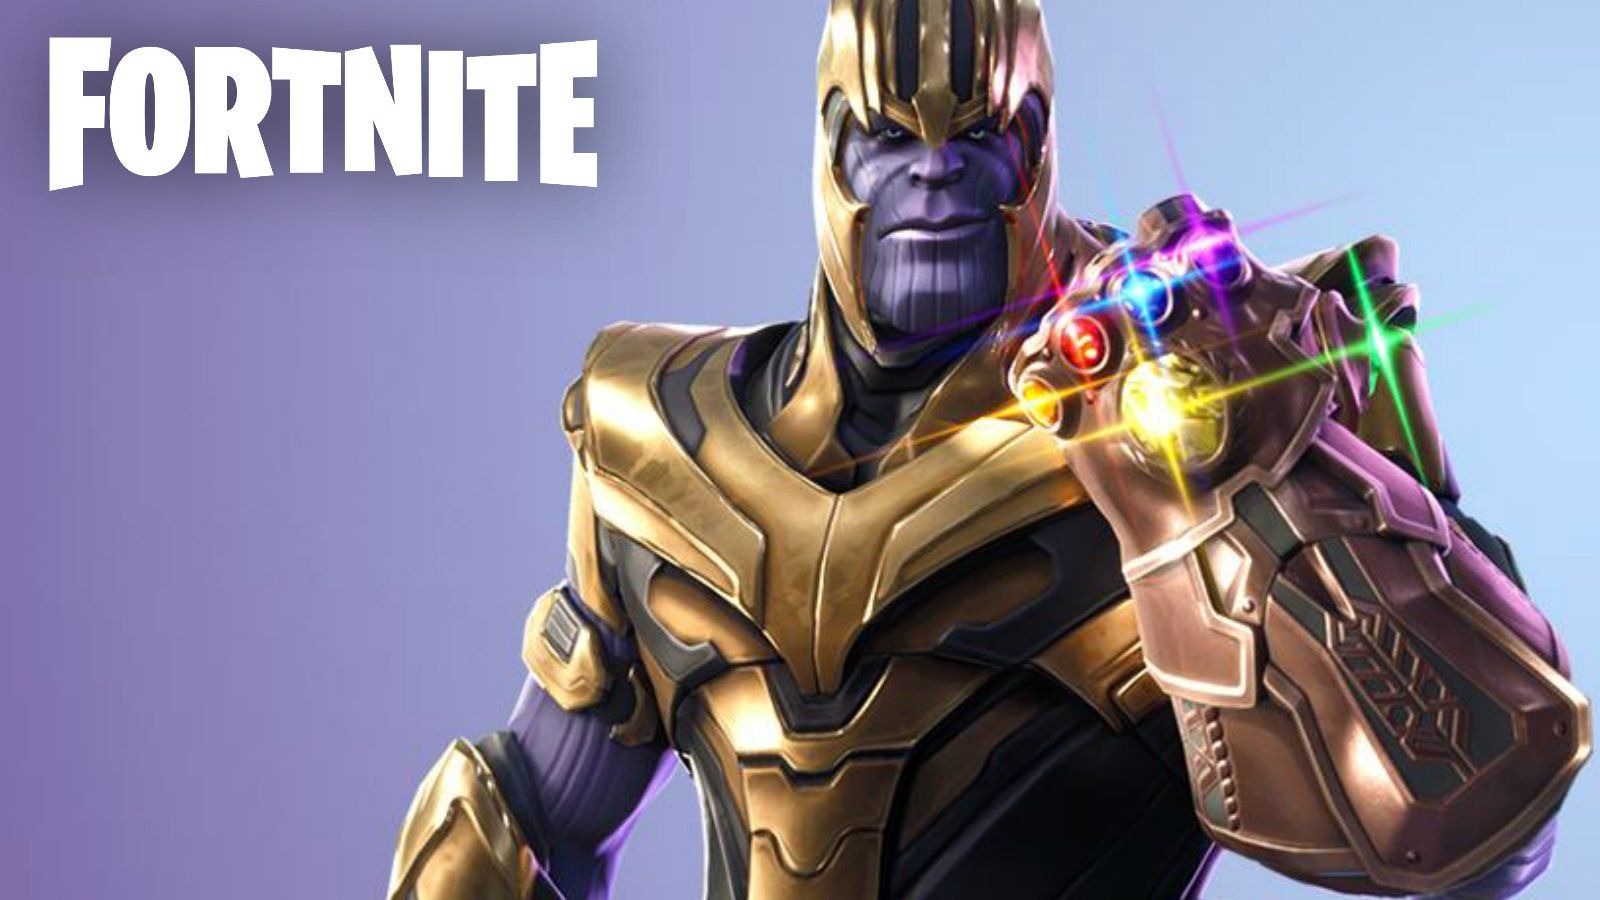 Thanos LTM possibly returning to Fortnite for Avengers: Endgame